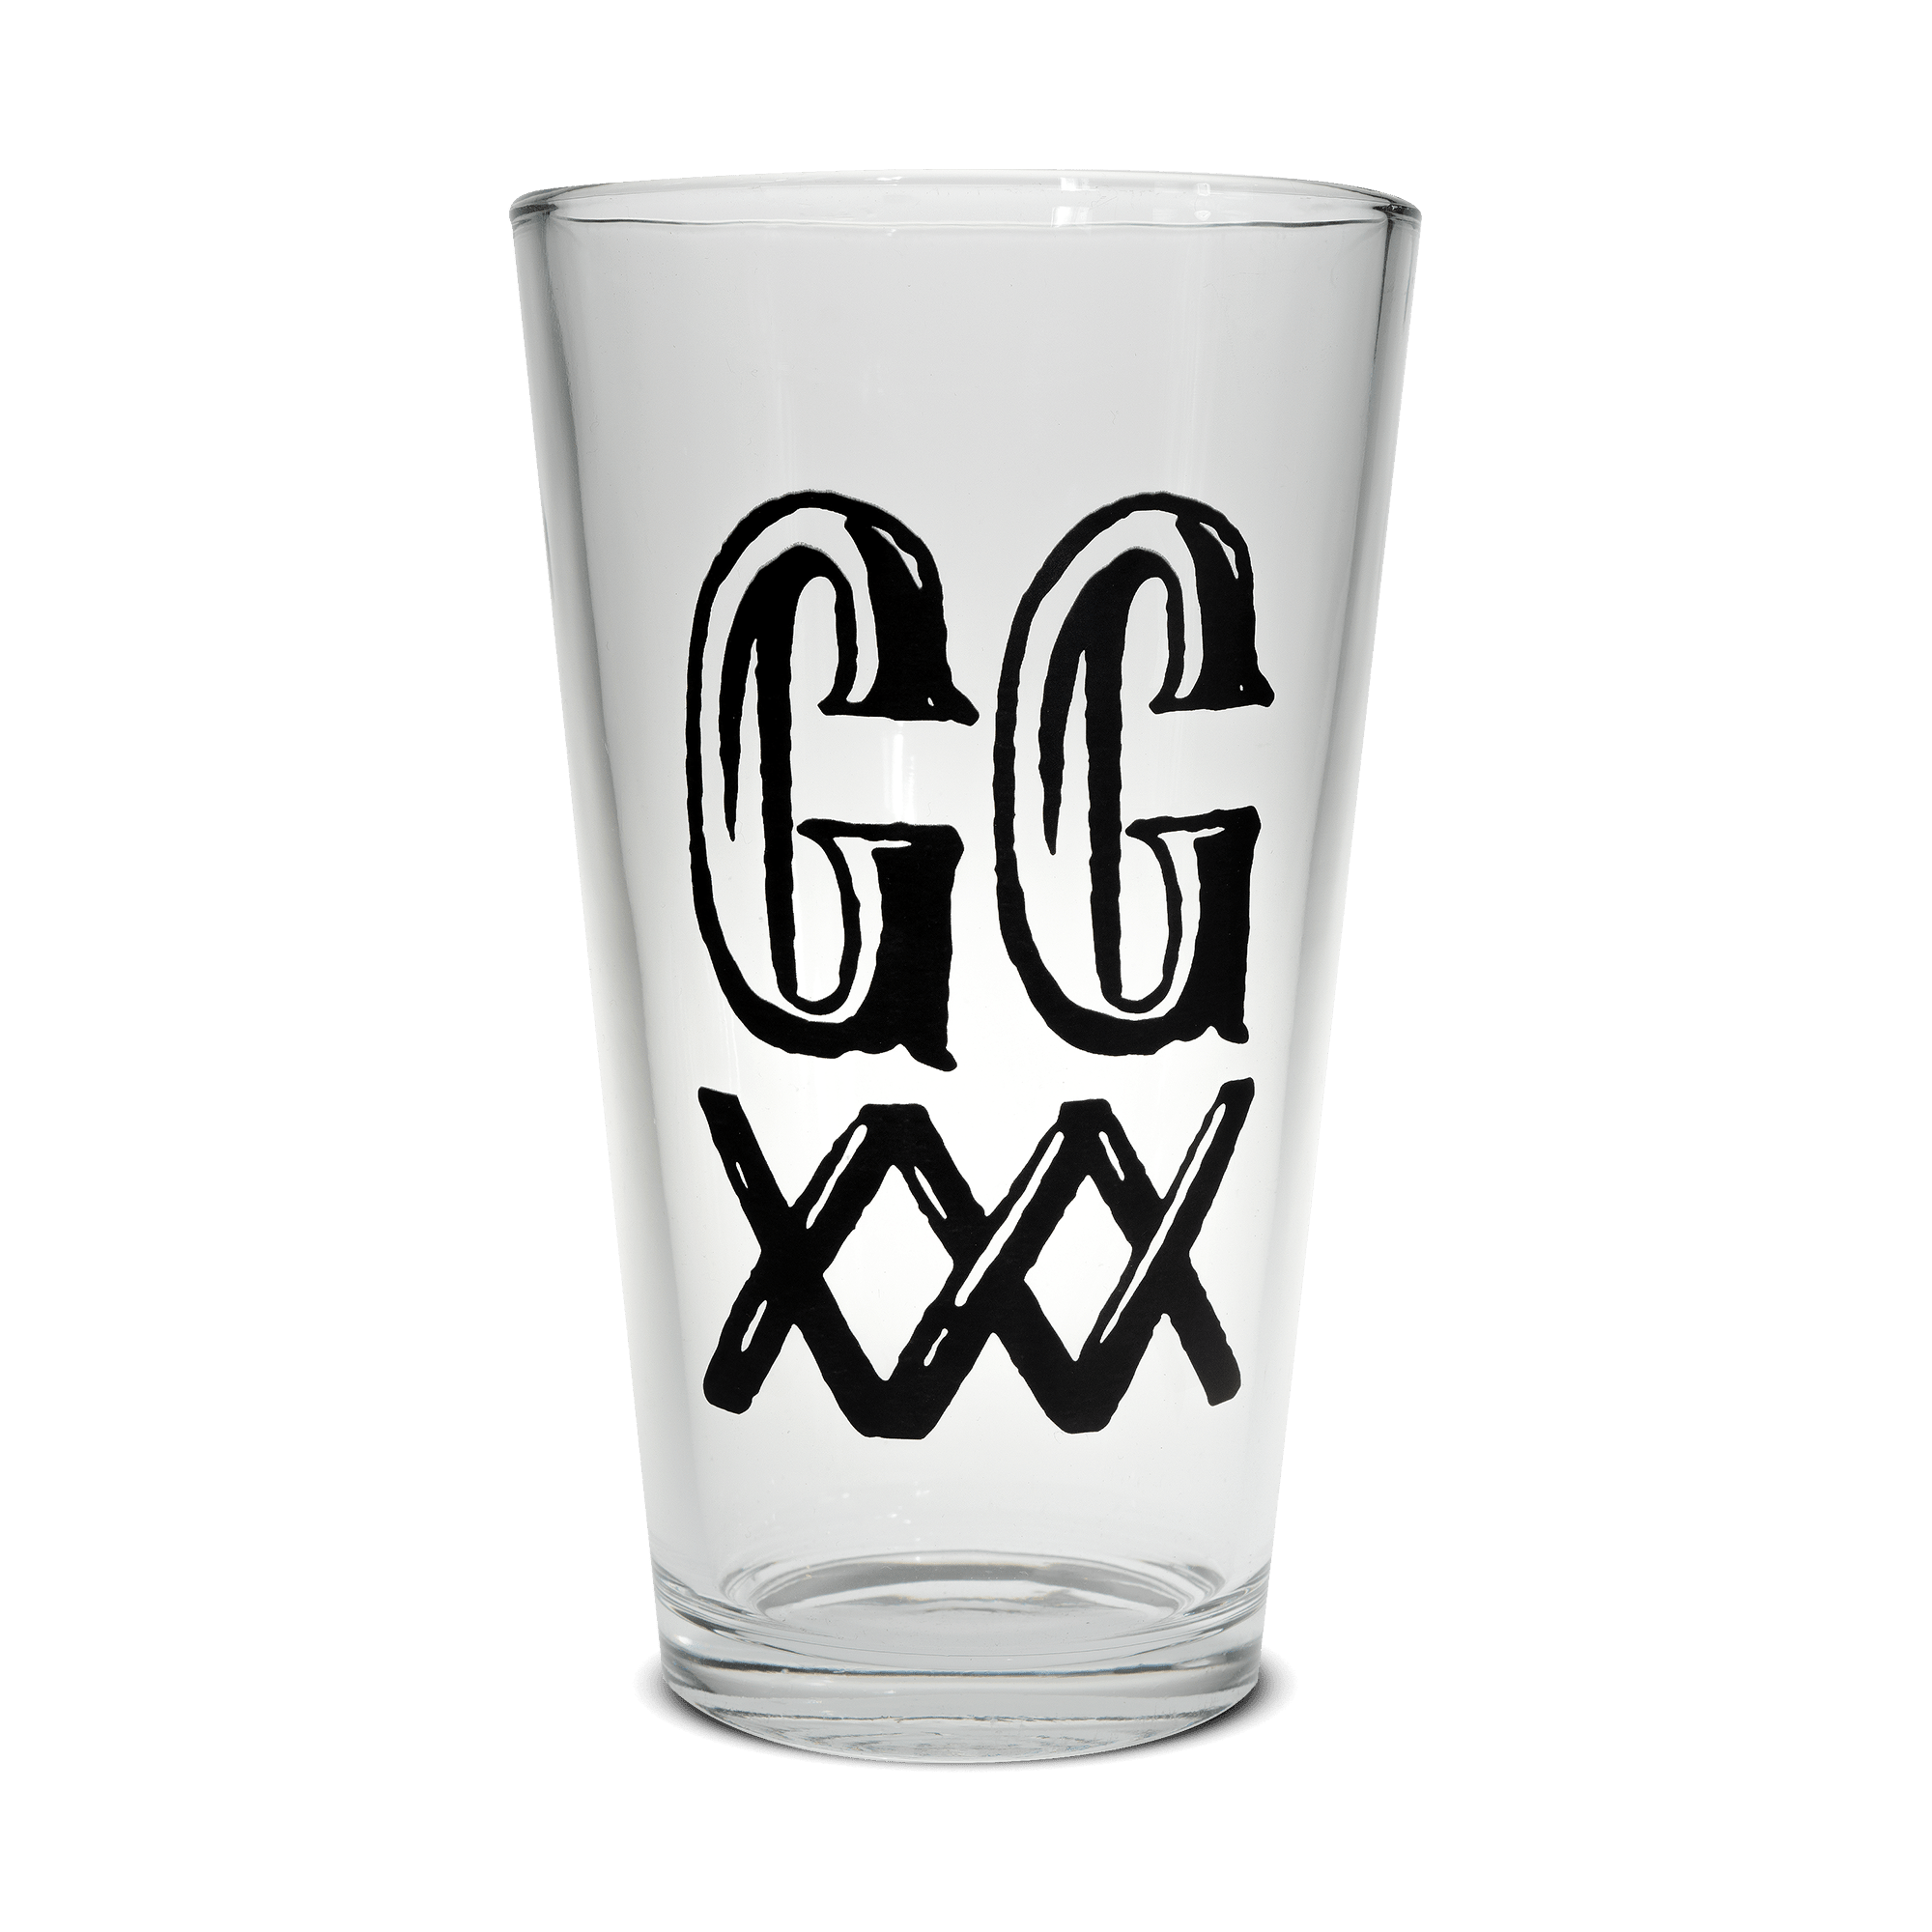 GGXXX Logo Pint Glass - Mista GG